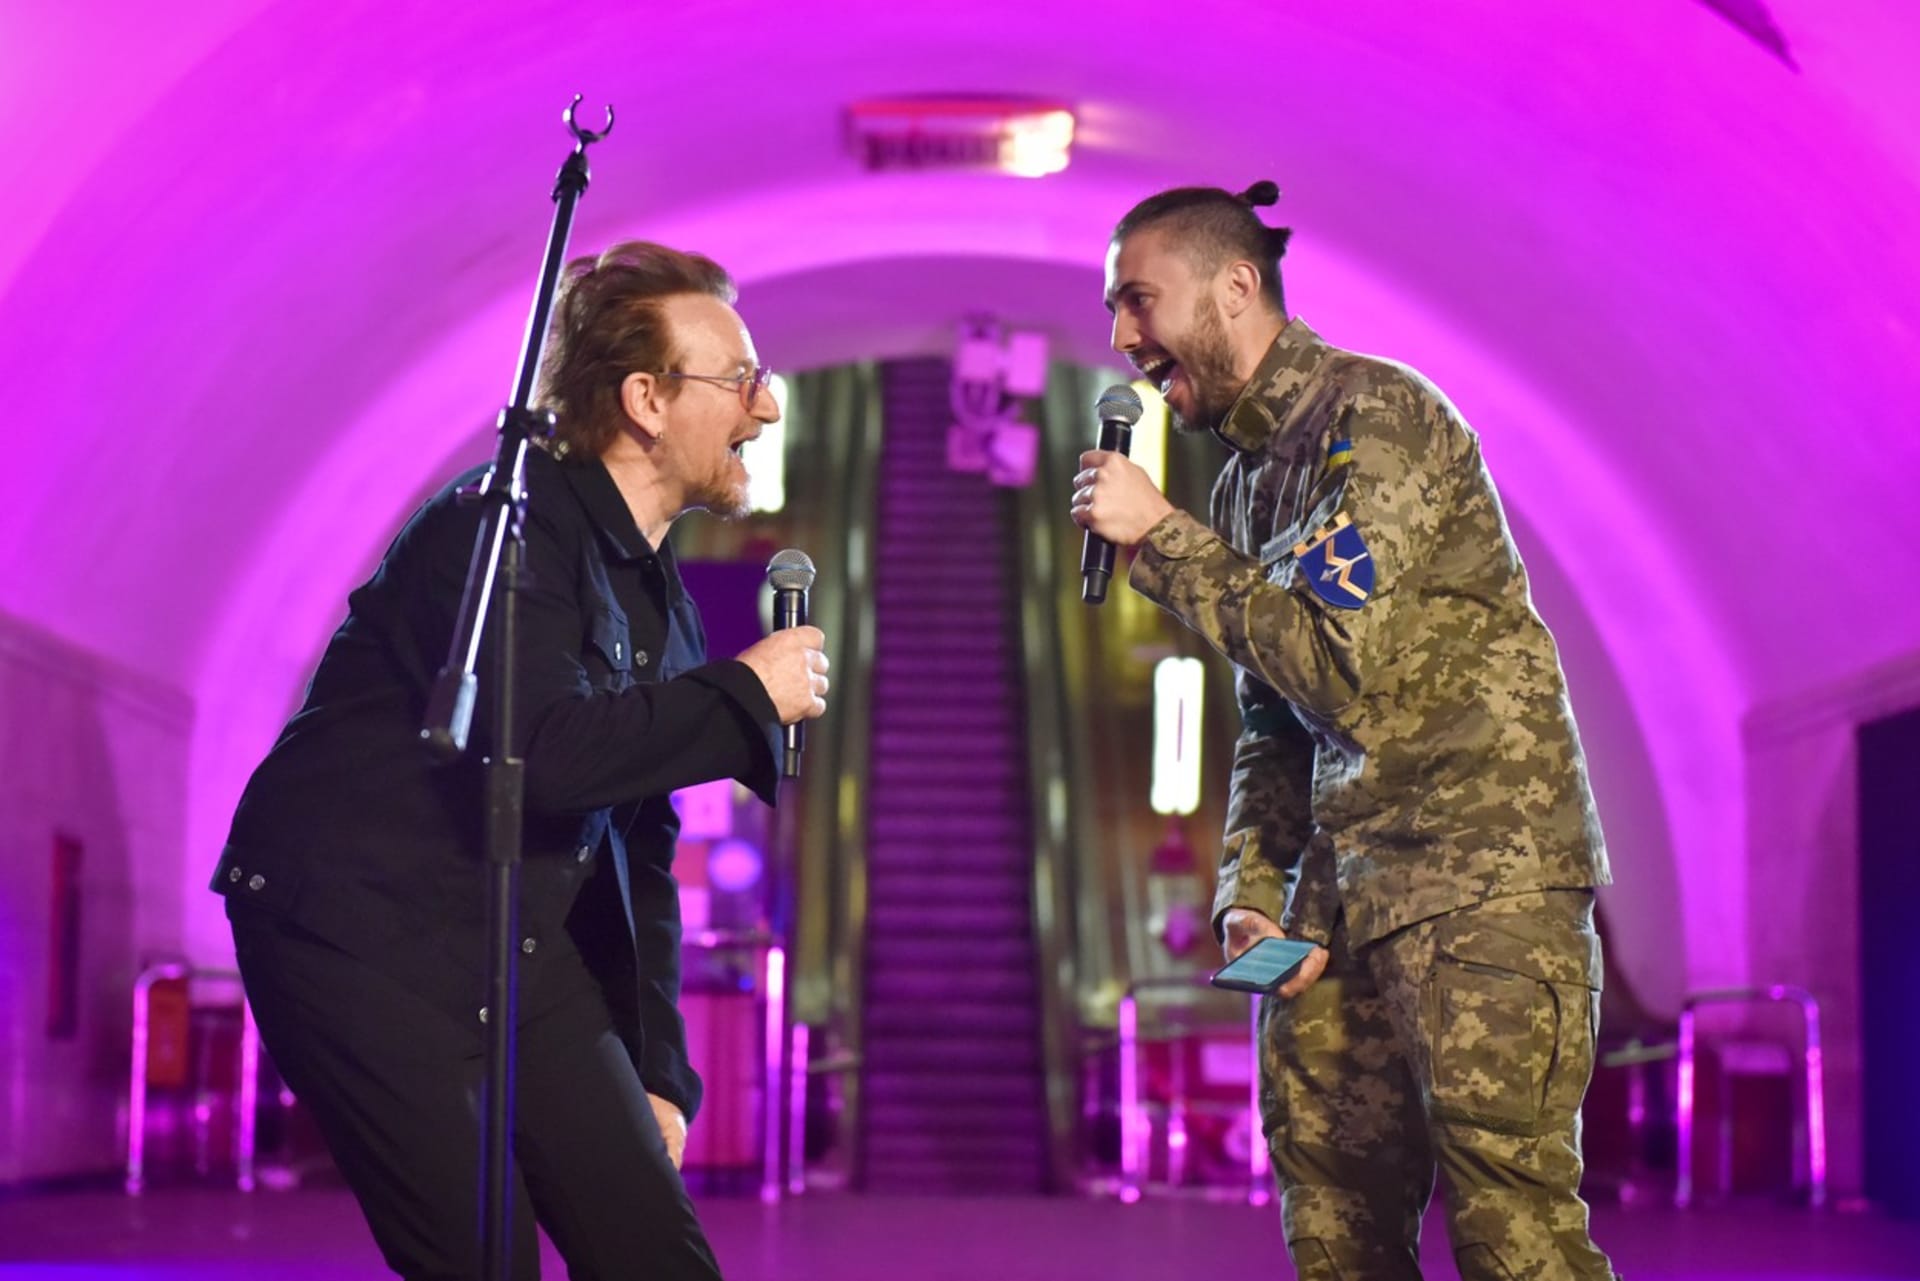 Bono Vox společně s kytaristou Edgem z kapely U2 vystoupil v kyjevském metru.